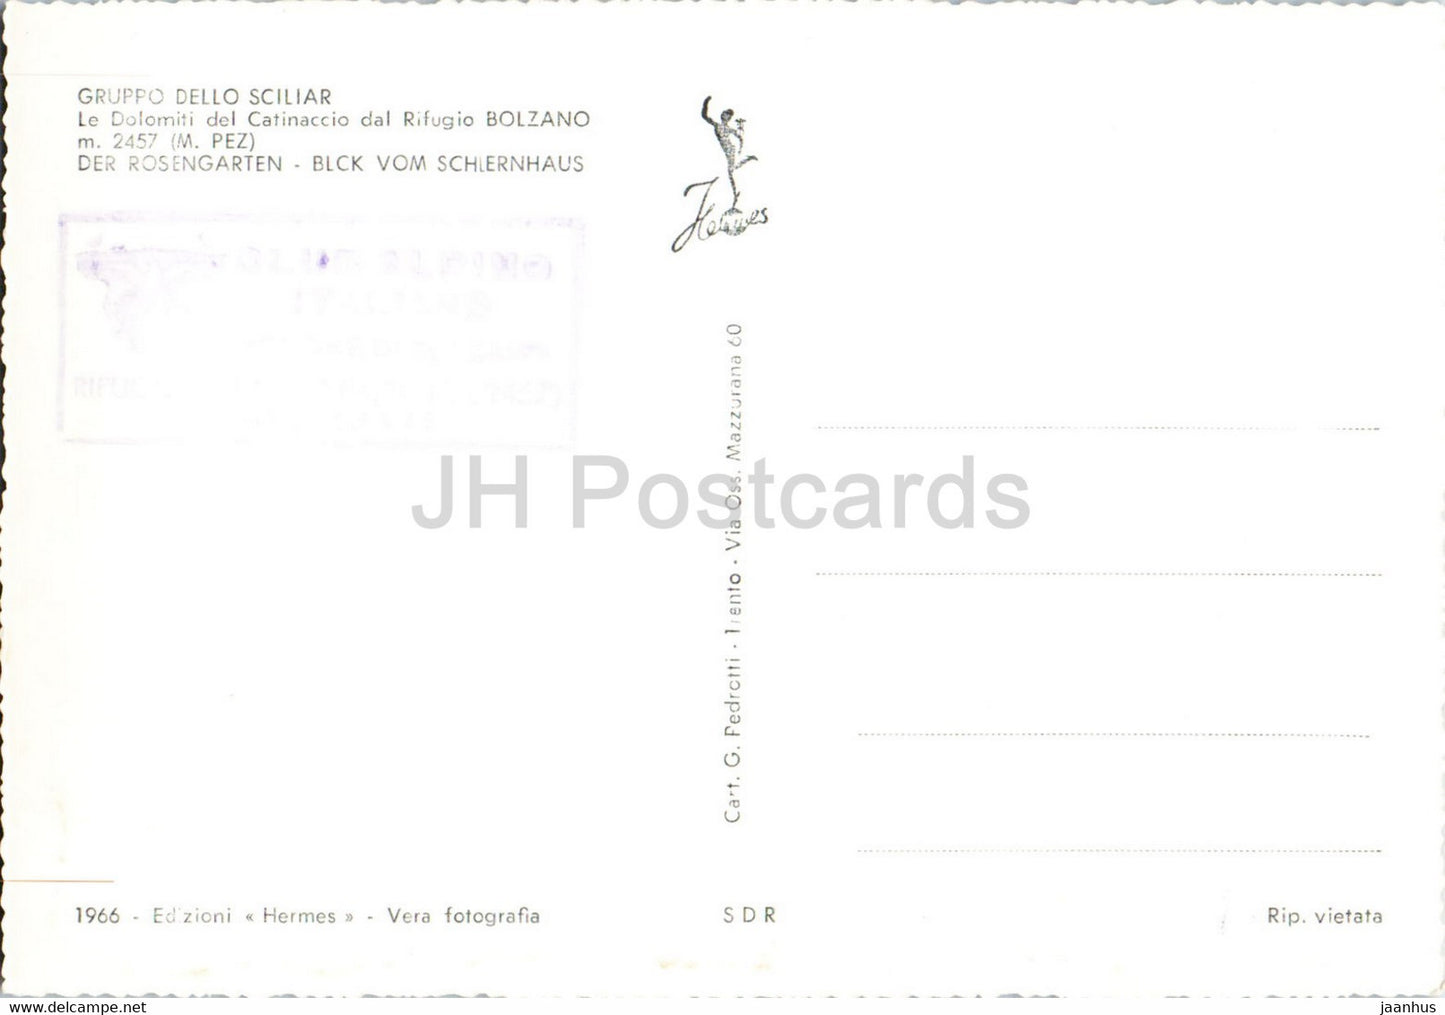 Gruppo Dello Sciliar - Catinaccio - Rifugio Bolzano - Italy - old postcard - unused